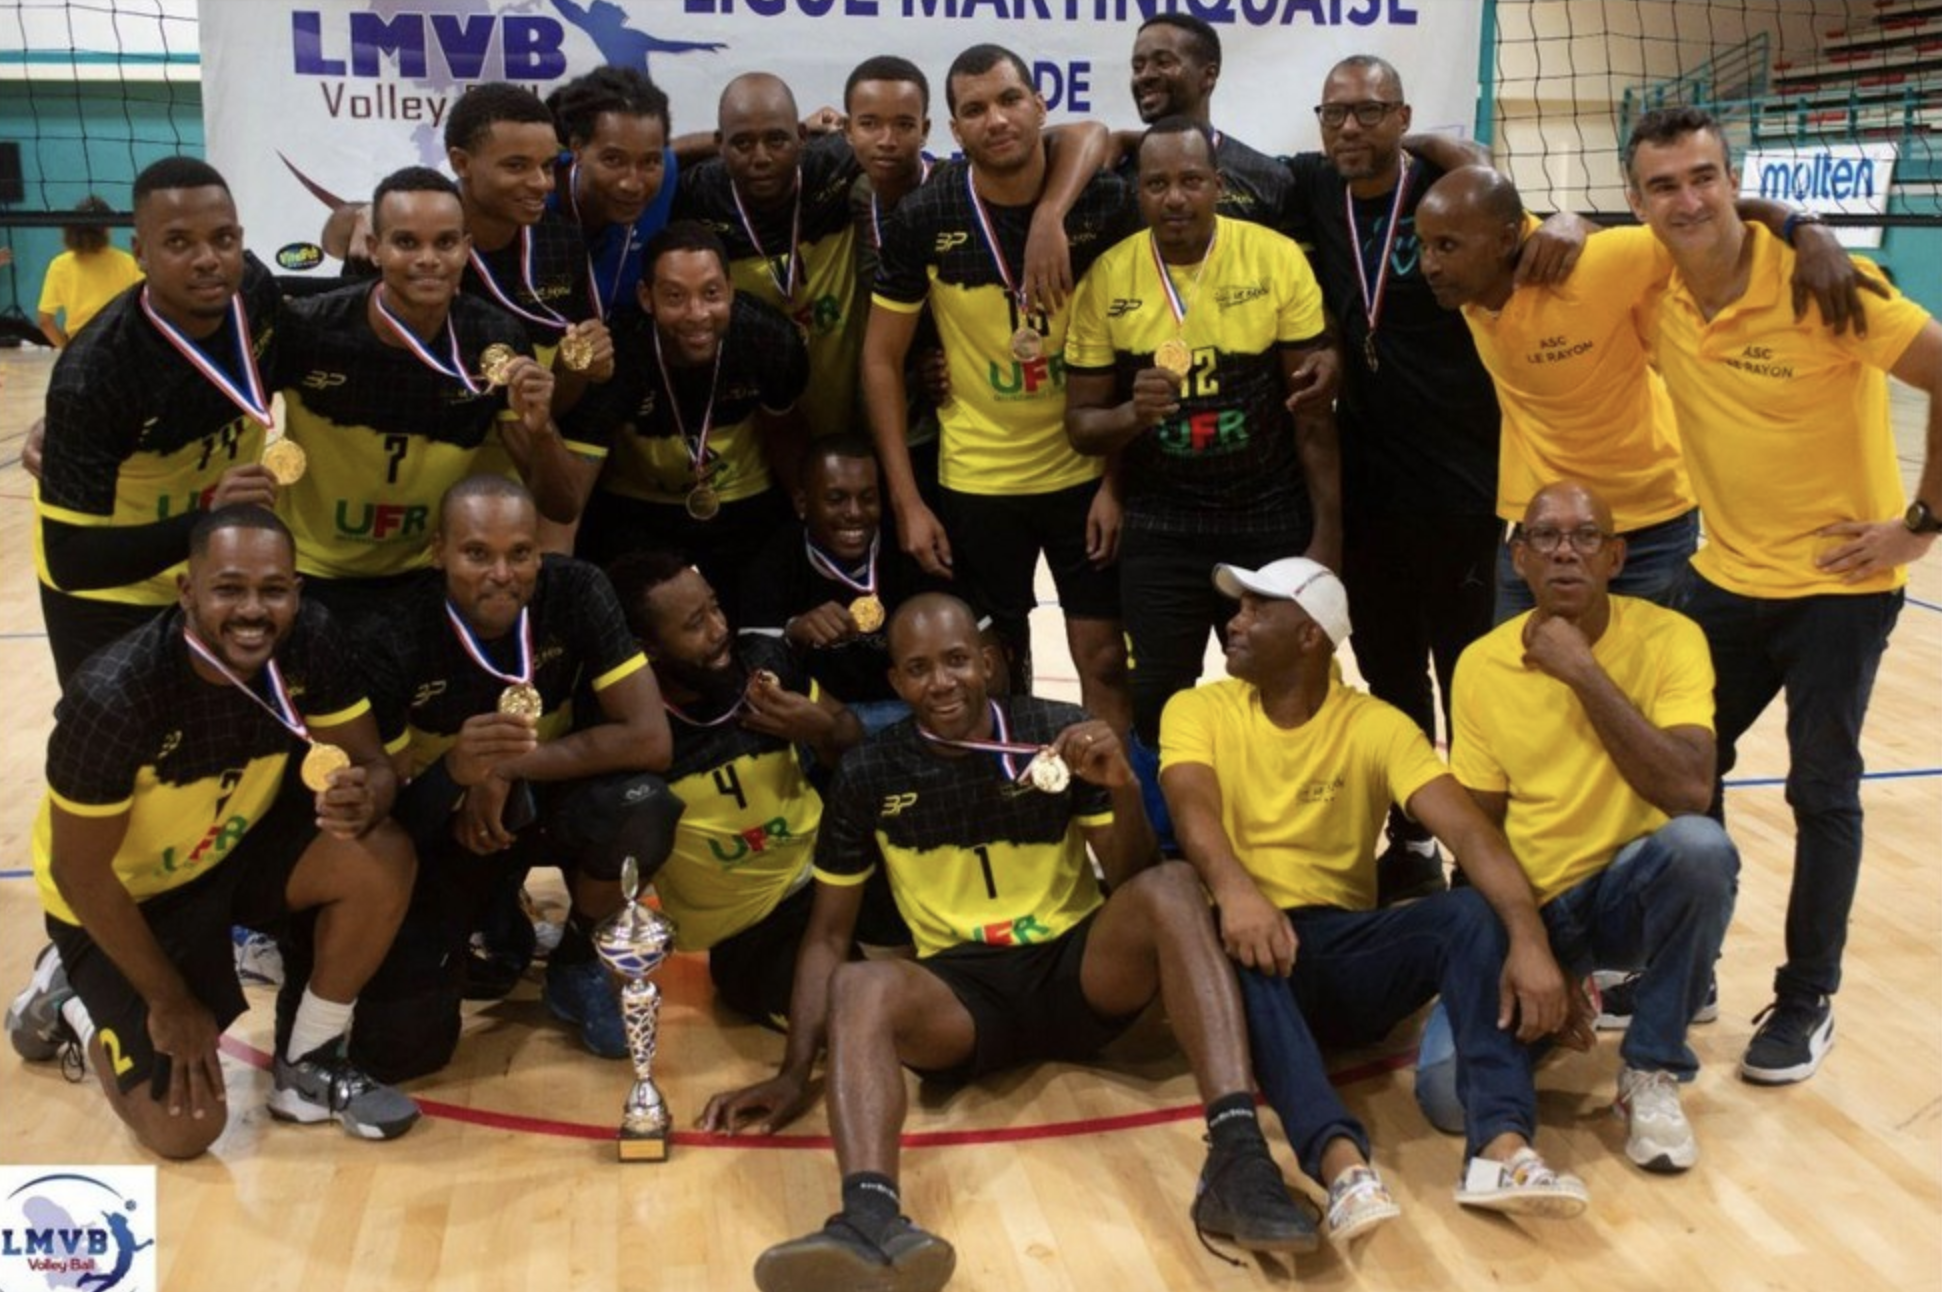     Coupe fédérale de volley-ball à la Réunion : le Rayon en finale, l’Espoir pour la 3ème place

